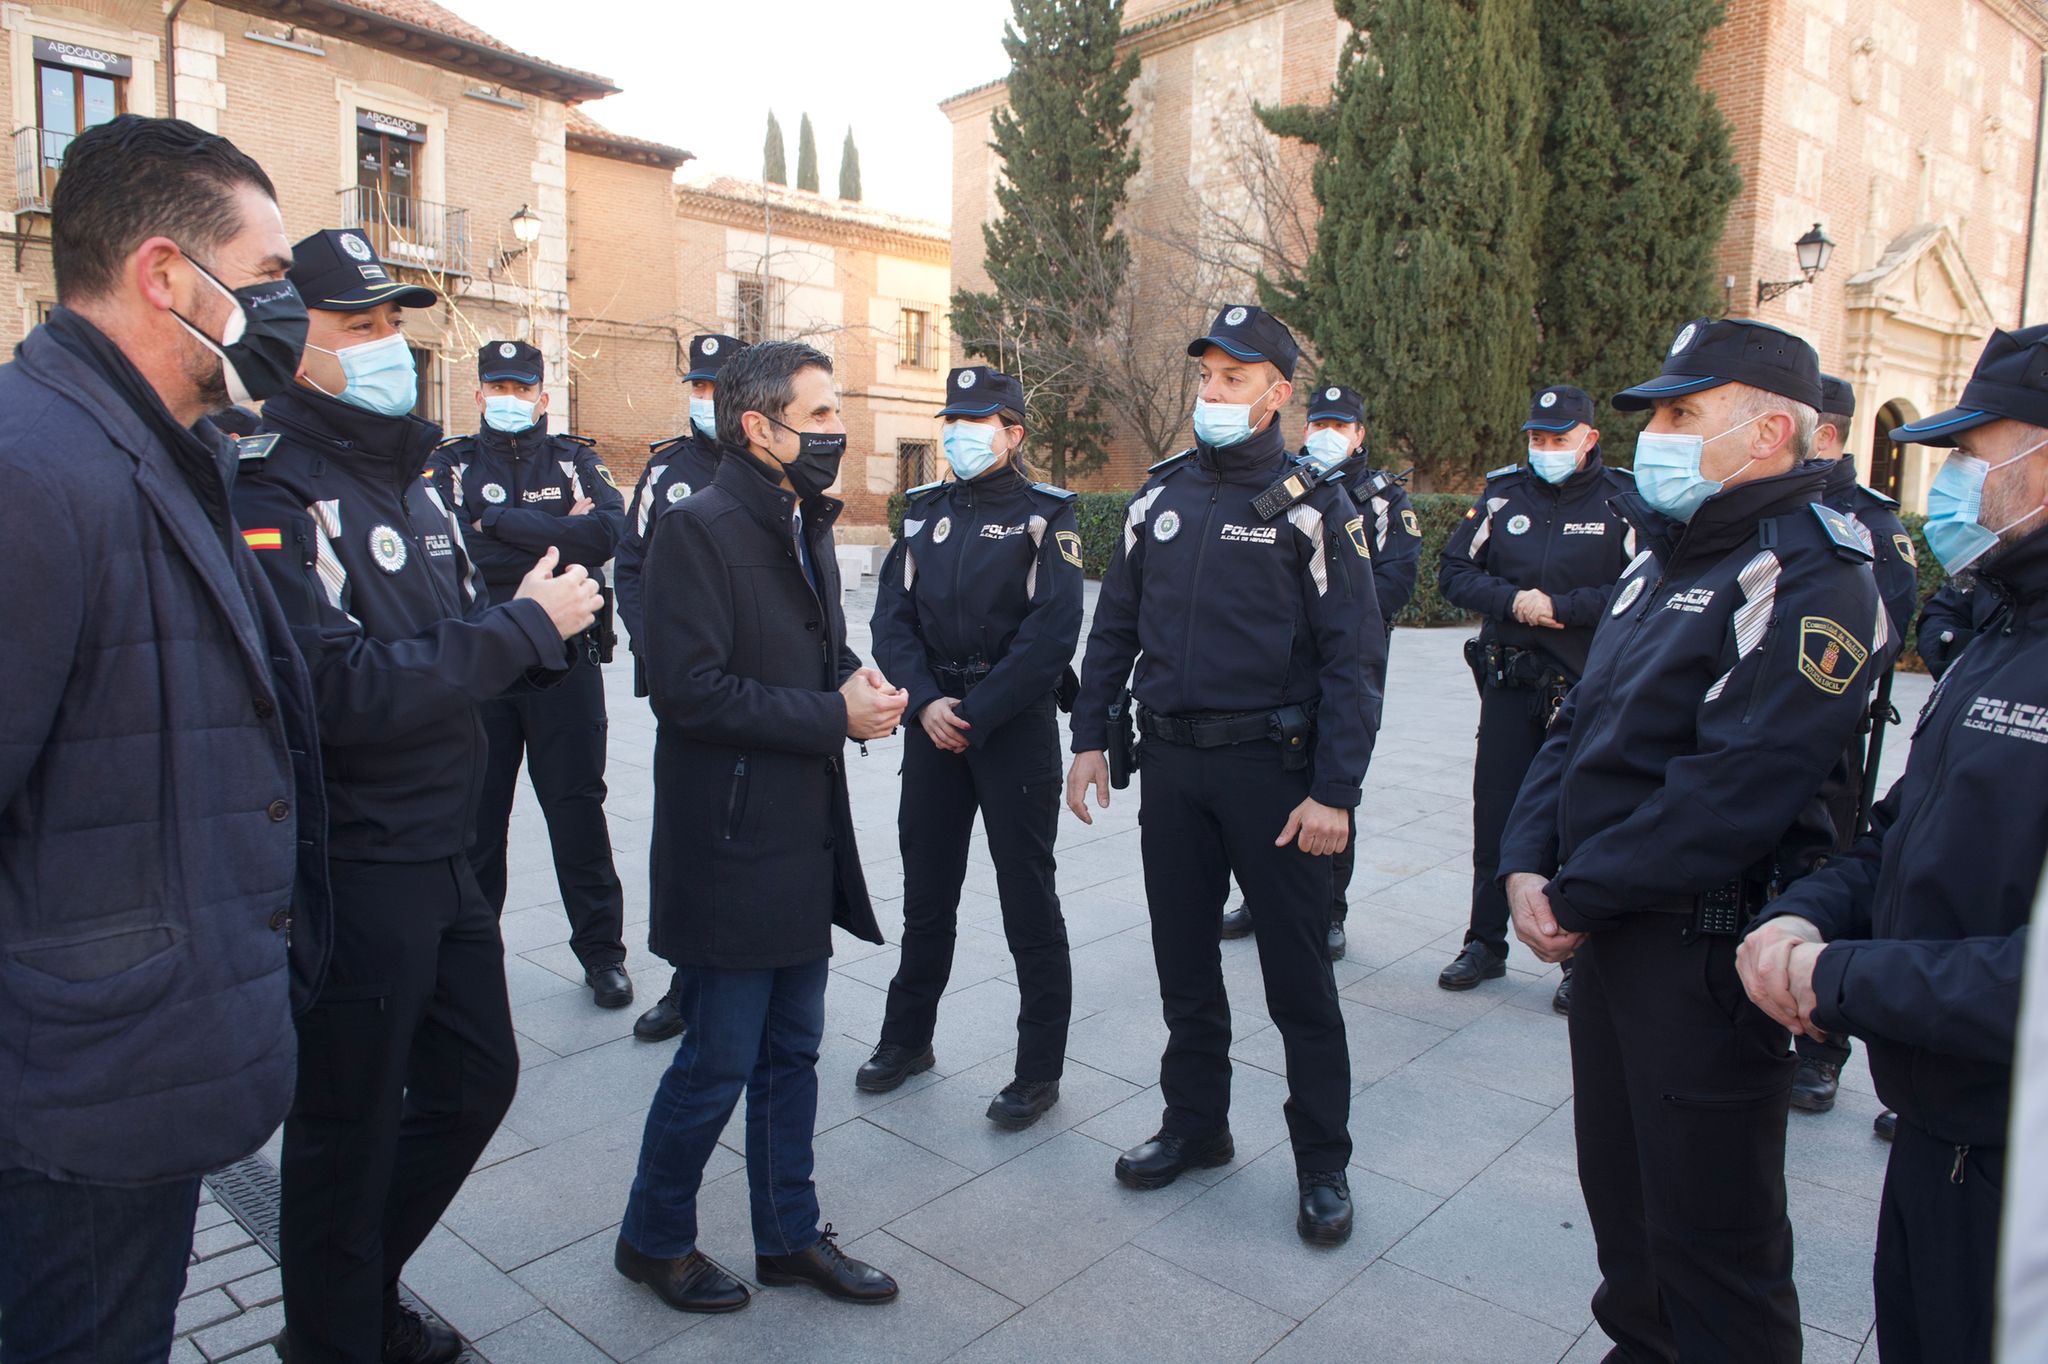 La Policía Local de Alcalá de Henares estrena uniforme - Diario Complutense